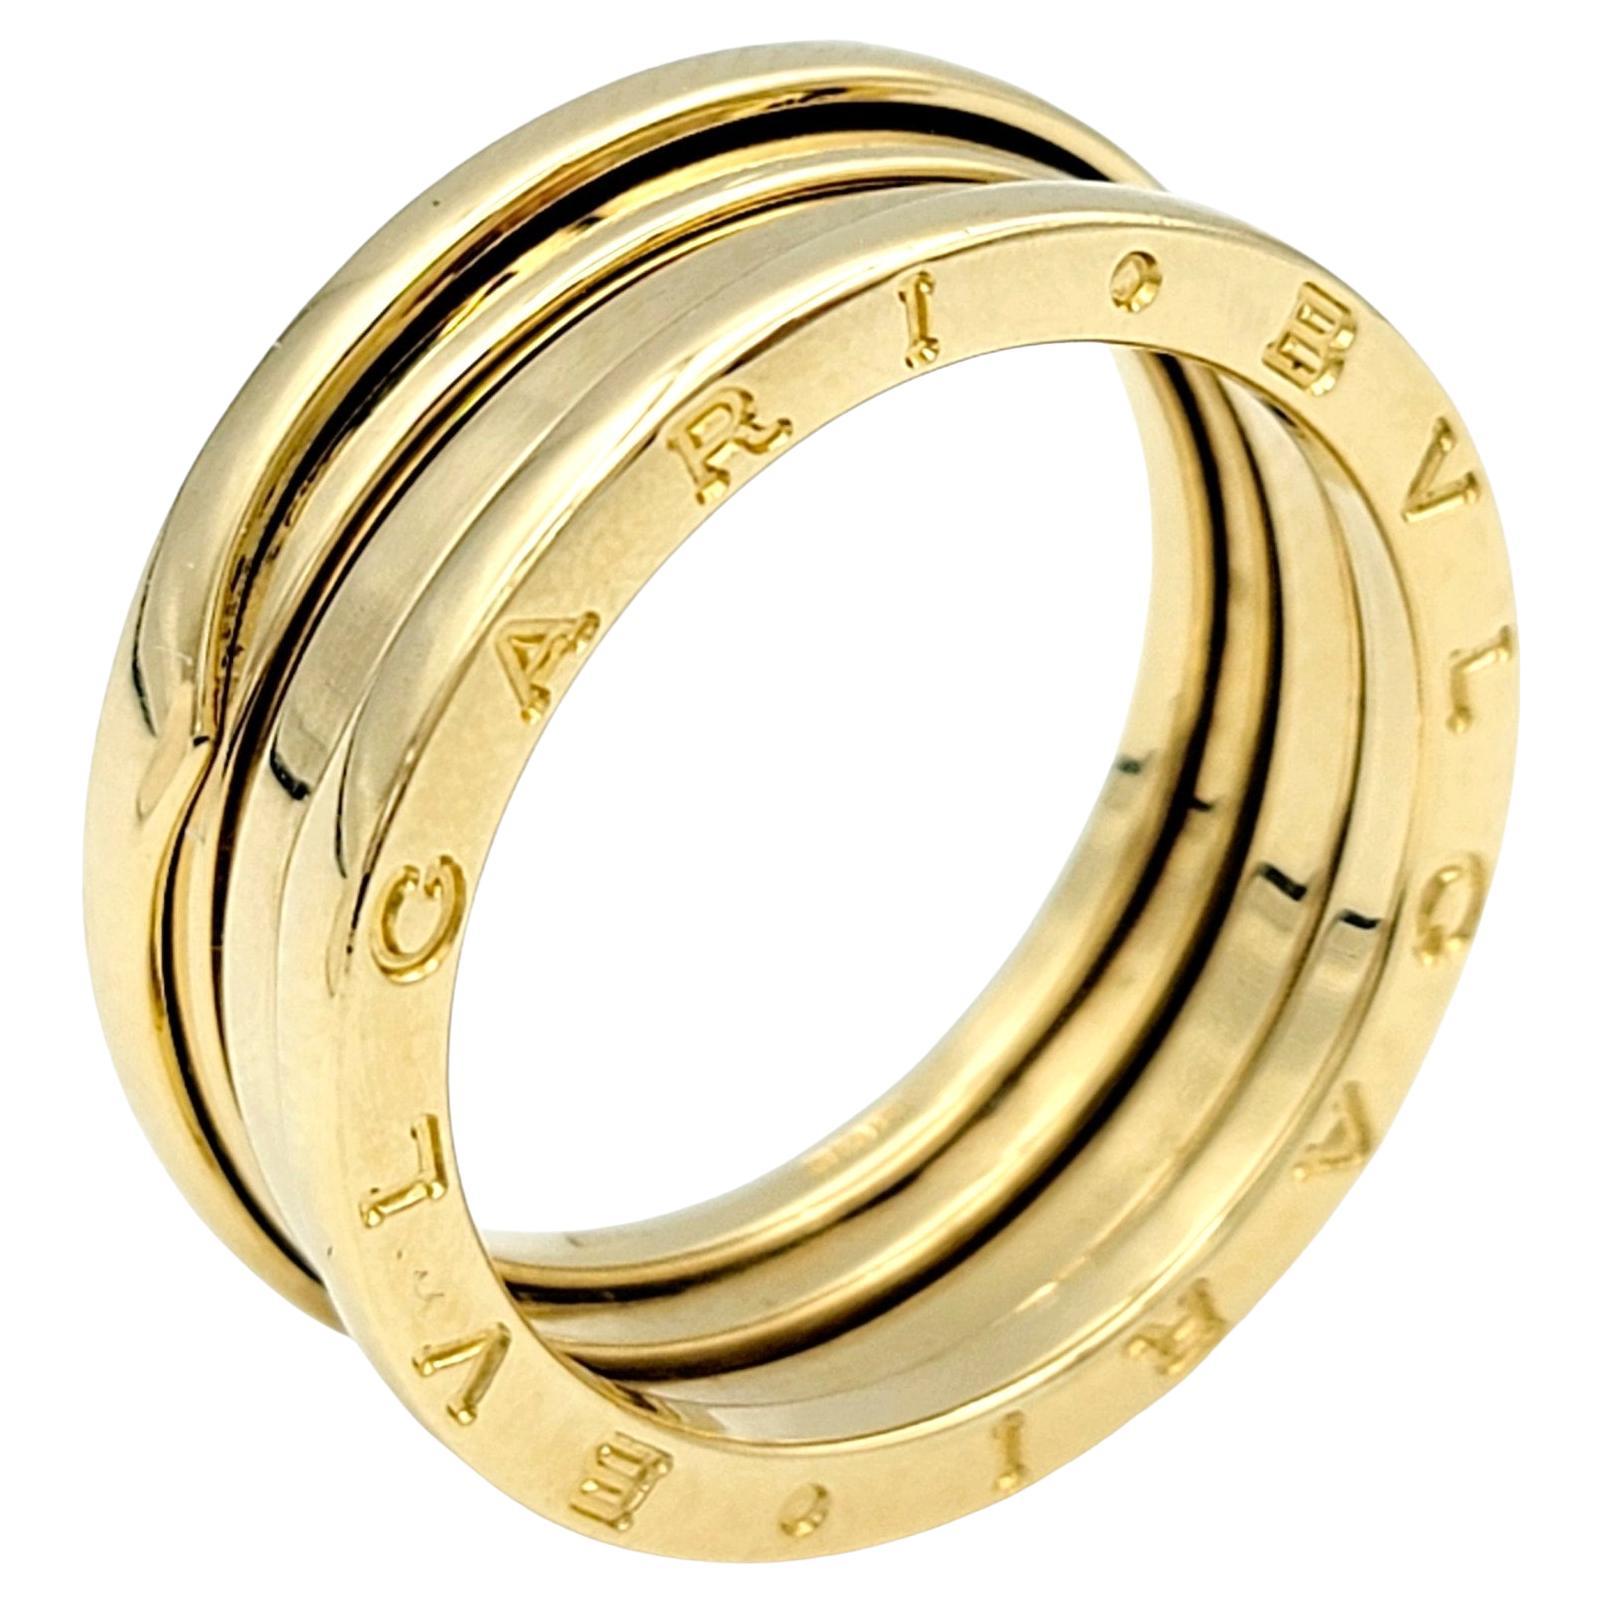 Taille de l'anneau 10.25

Cette bague luxueuse et moderne en or jaune Bulgari B.ZERO1 est une œuvre d'art. Cette pièce exquise s'inspire de l'emblématique Colisée, représentant la créativité inégalée de Bulgari en matière de conception de bijoux. Le